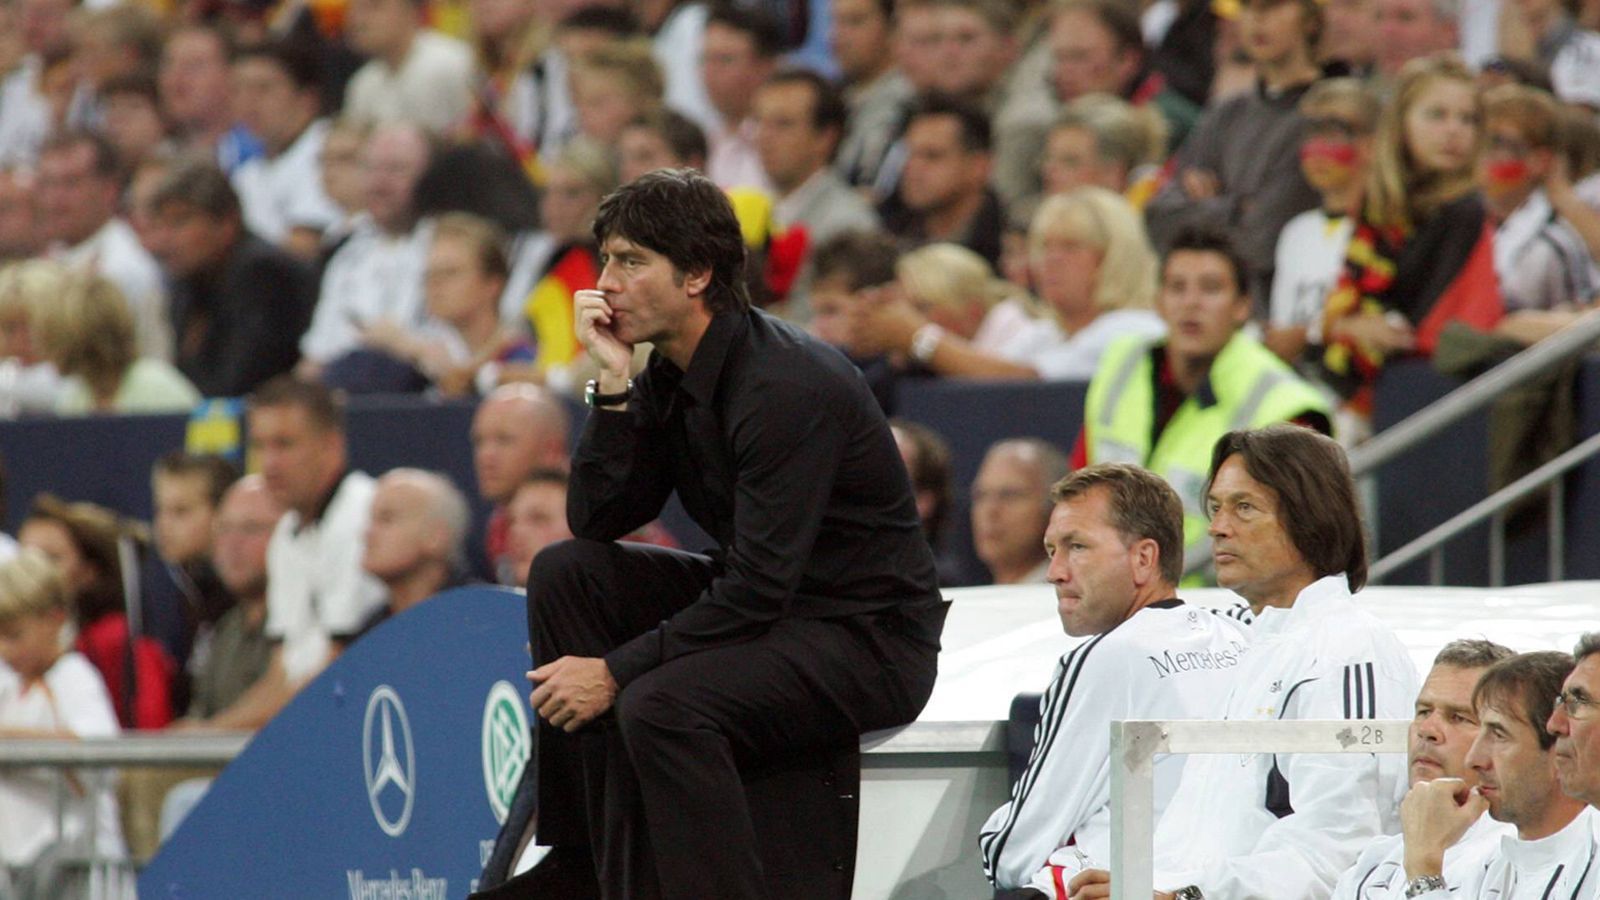 
                <strong>Joachim Löw</strong><br>
                Nachdem Löw als Co-Trainer von Jürgen Klinsmann bei der Weltmeisterschaft 2006 fungierte, wurde er zum Bundestrainer befördert. Sein Beginn hätte kaum besser verlaufen können. Am 16. August 2006 führte er die DFB-Auswahl zu einem 3:0 gegen Schweden. Die drei darauffolgenden Spiele gewann die deutsche Nationalmannschaft ebenfalls ohne Gegentor. Somit wurde Löw zum ersten Bundestrainer, der sein Amt mit vier Siegen ohne Gegentor begann. Sein größter Erfolg war der WM-Sieg 2014.
              